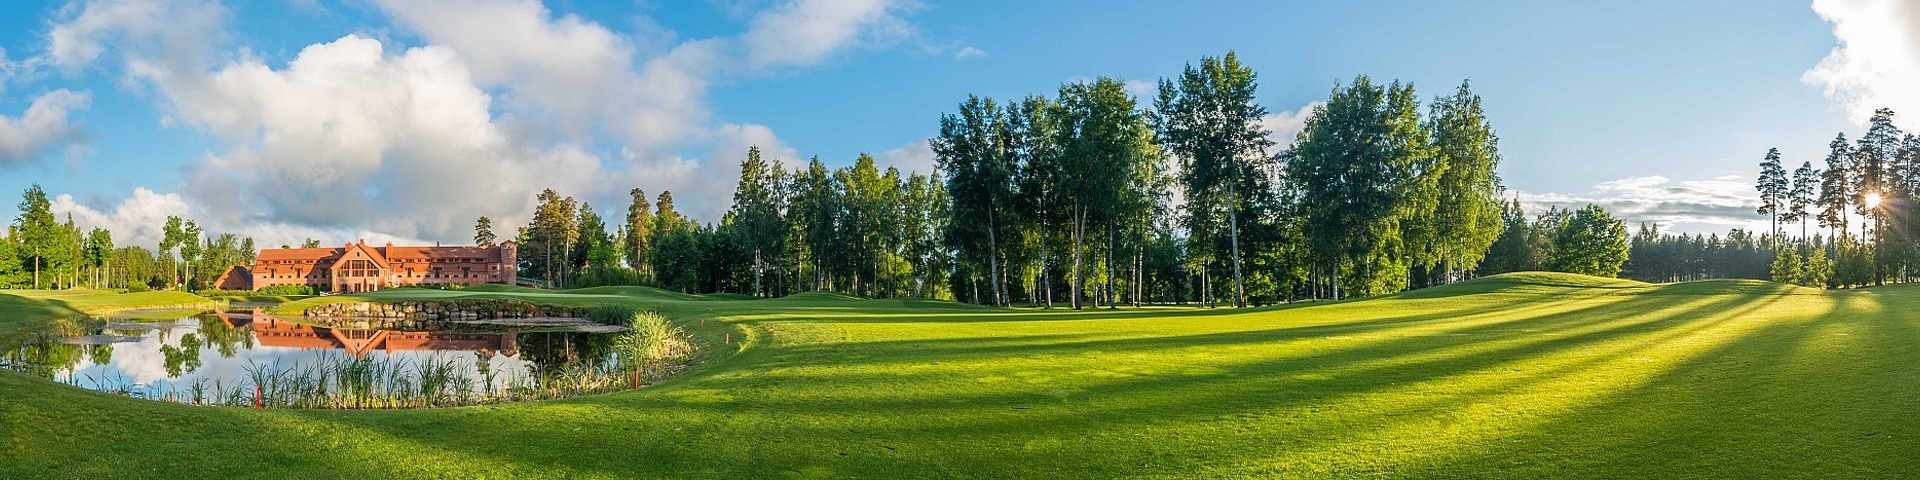 Linna Golf Resort - Et af Finlands bedste golf resorts